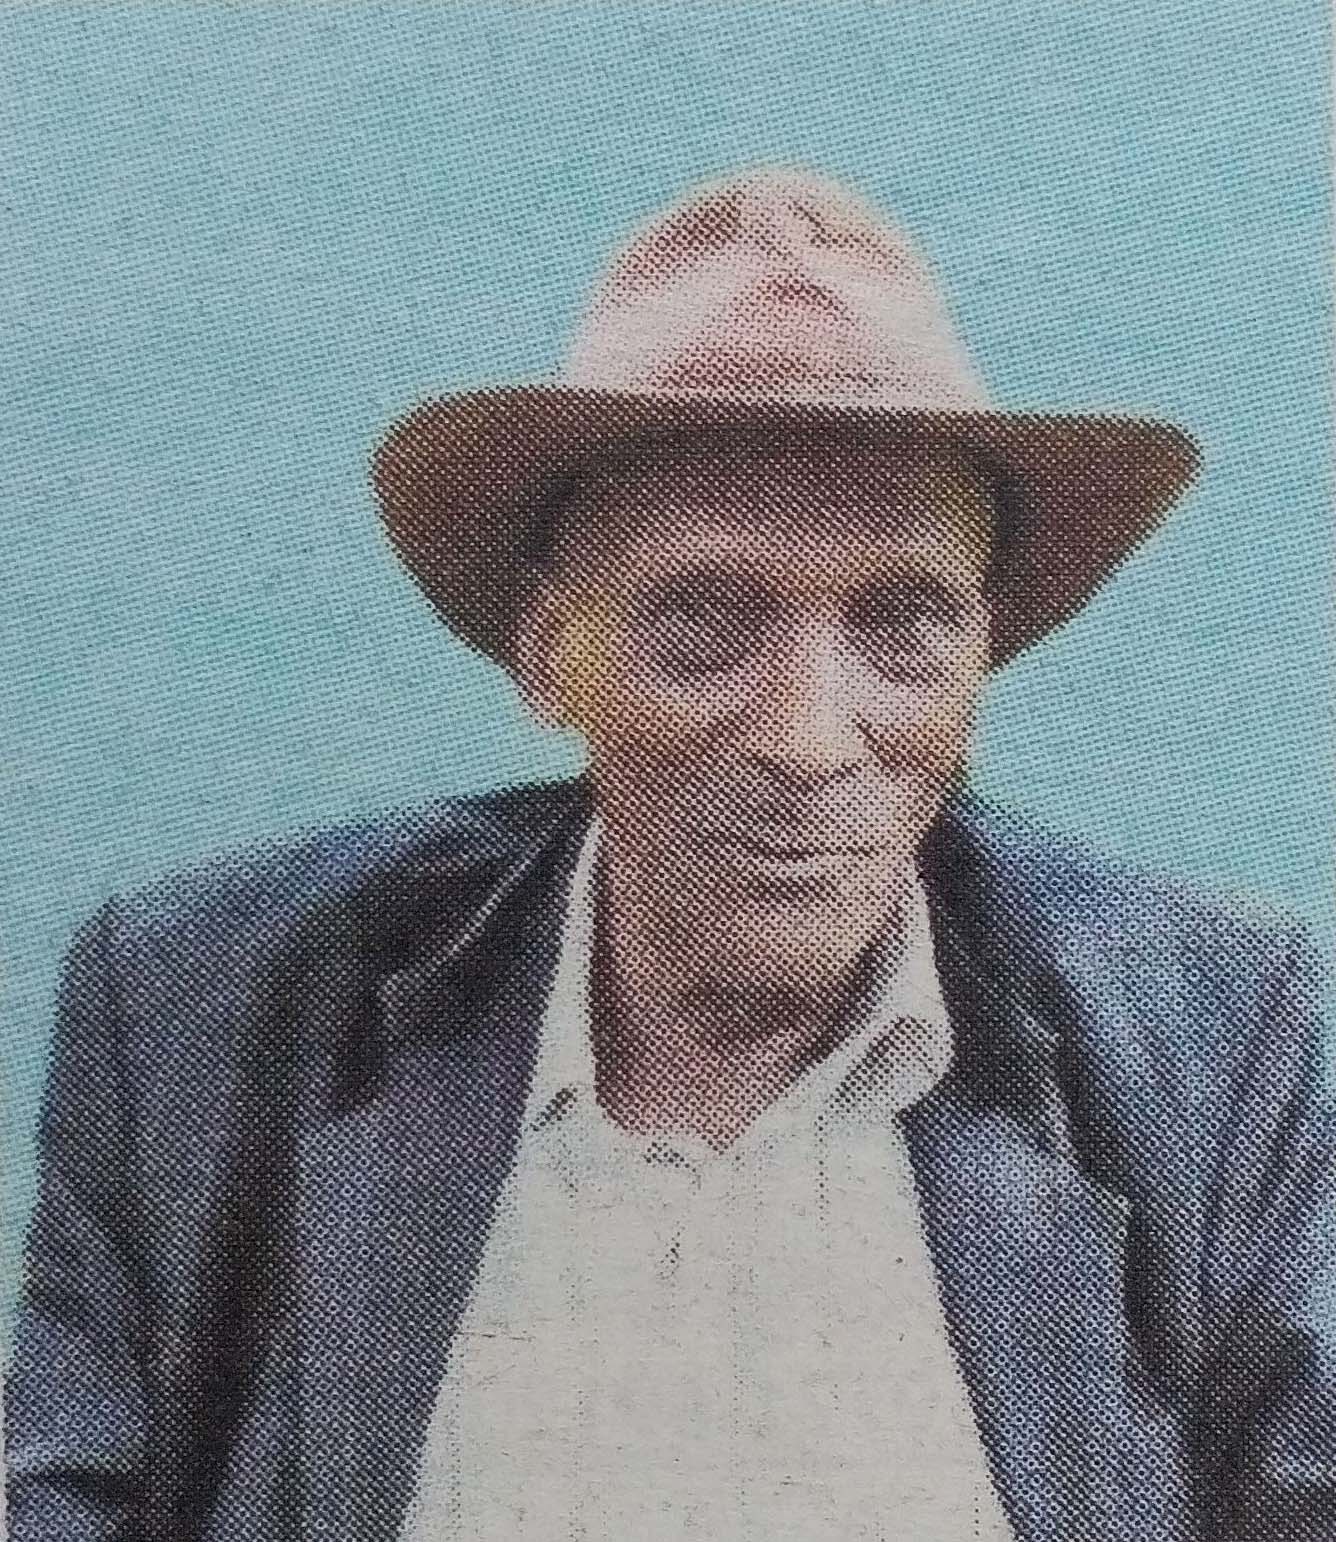 Obituary Image of George Kimani Waithaka